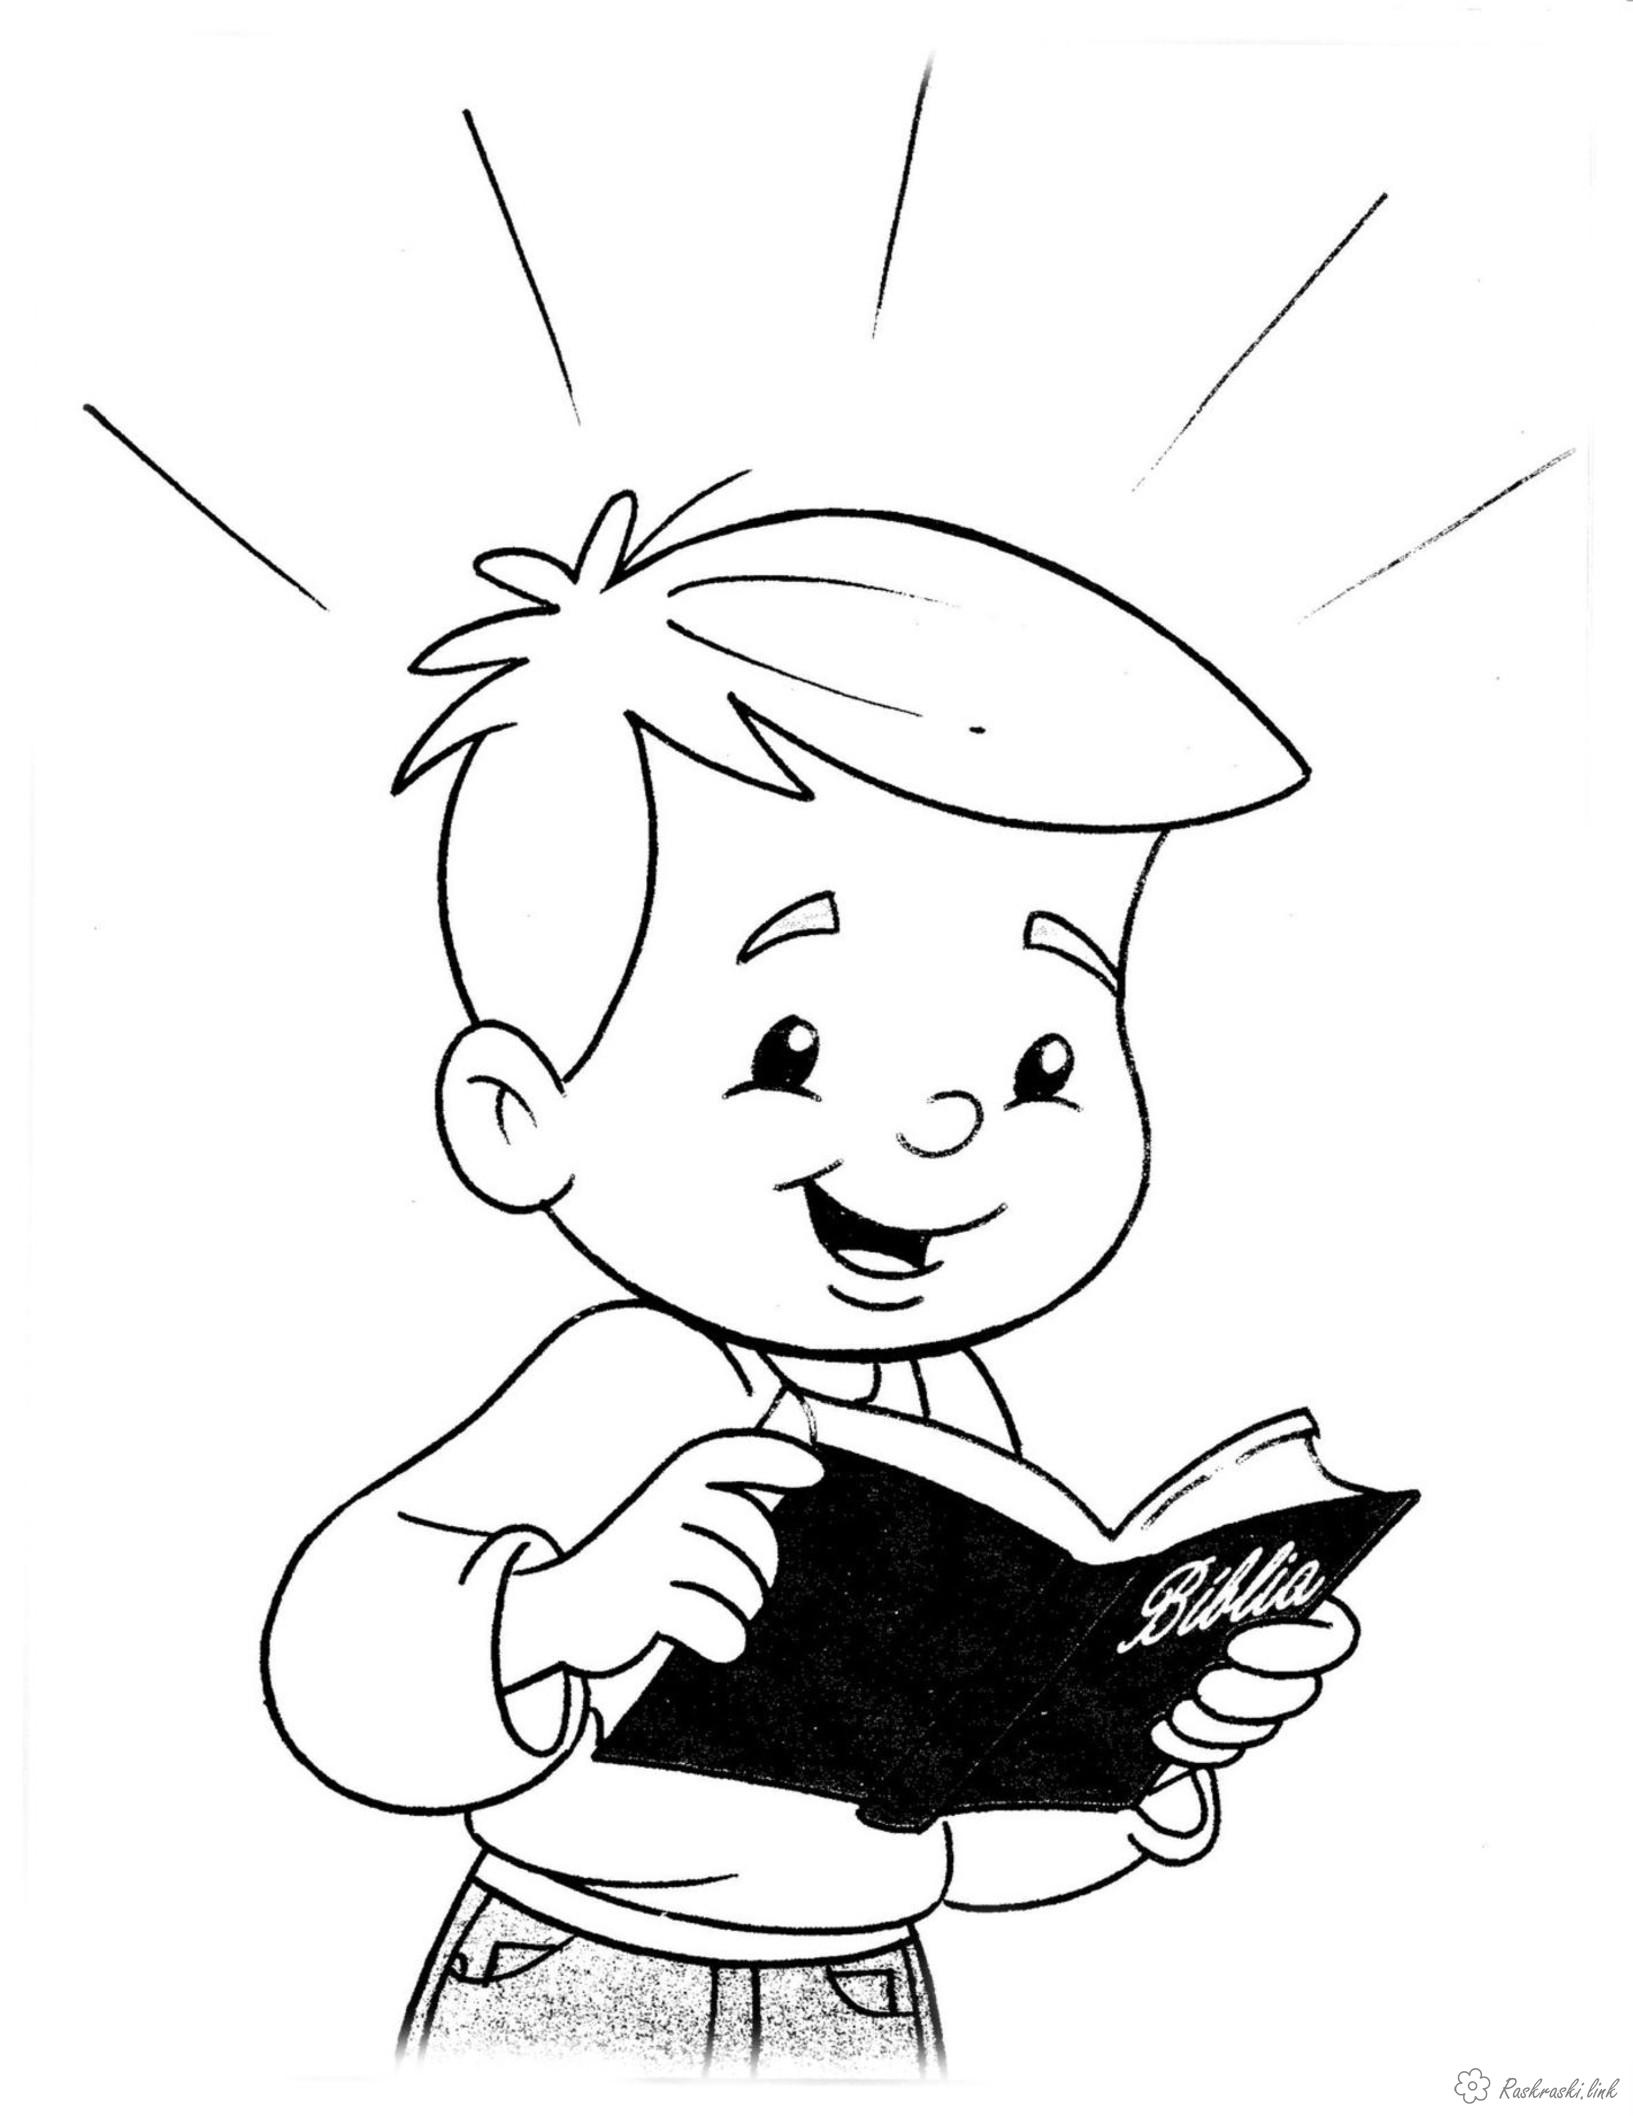 Розмальовки дітей Свято 1 червня День захисту дітей хлопчик книга